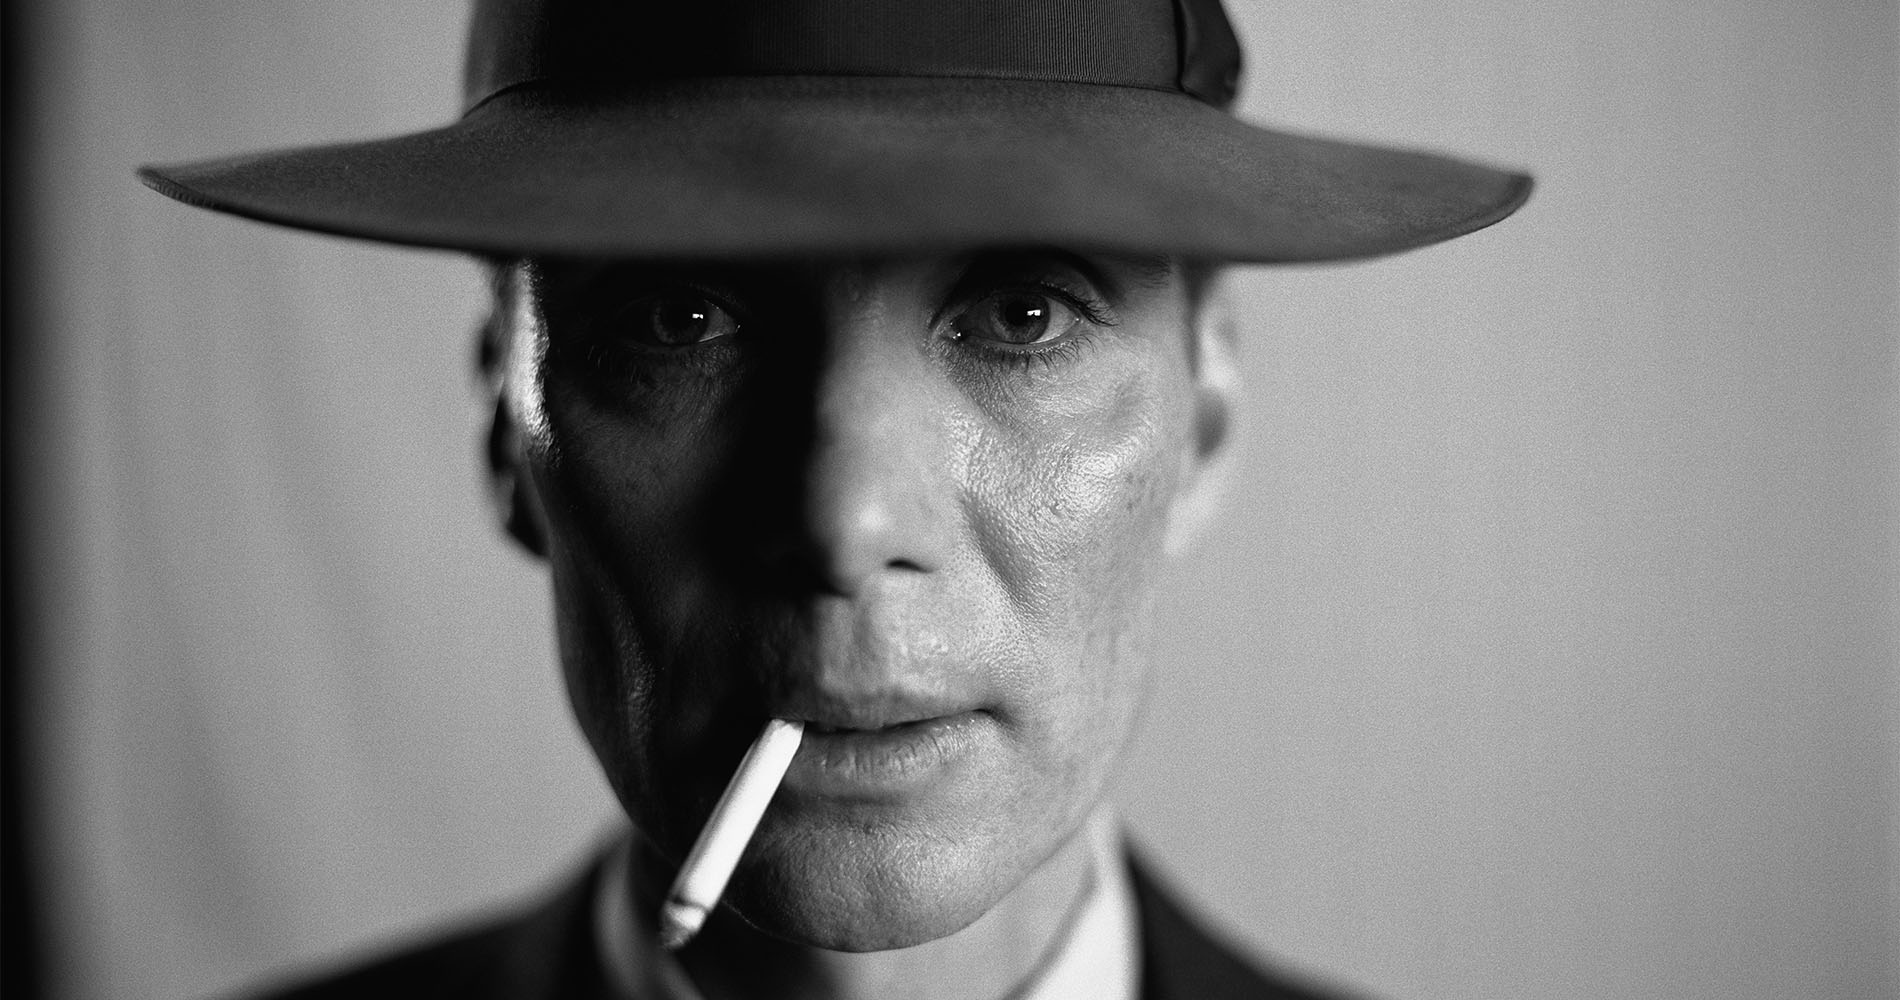 Czarno-białe zdjęcie portretowe mężczyzny w kapeluszu z papierosem w ustach.